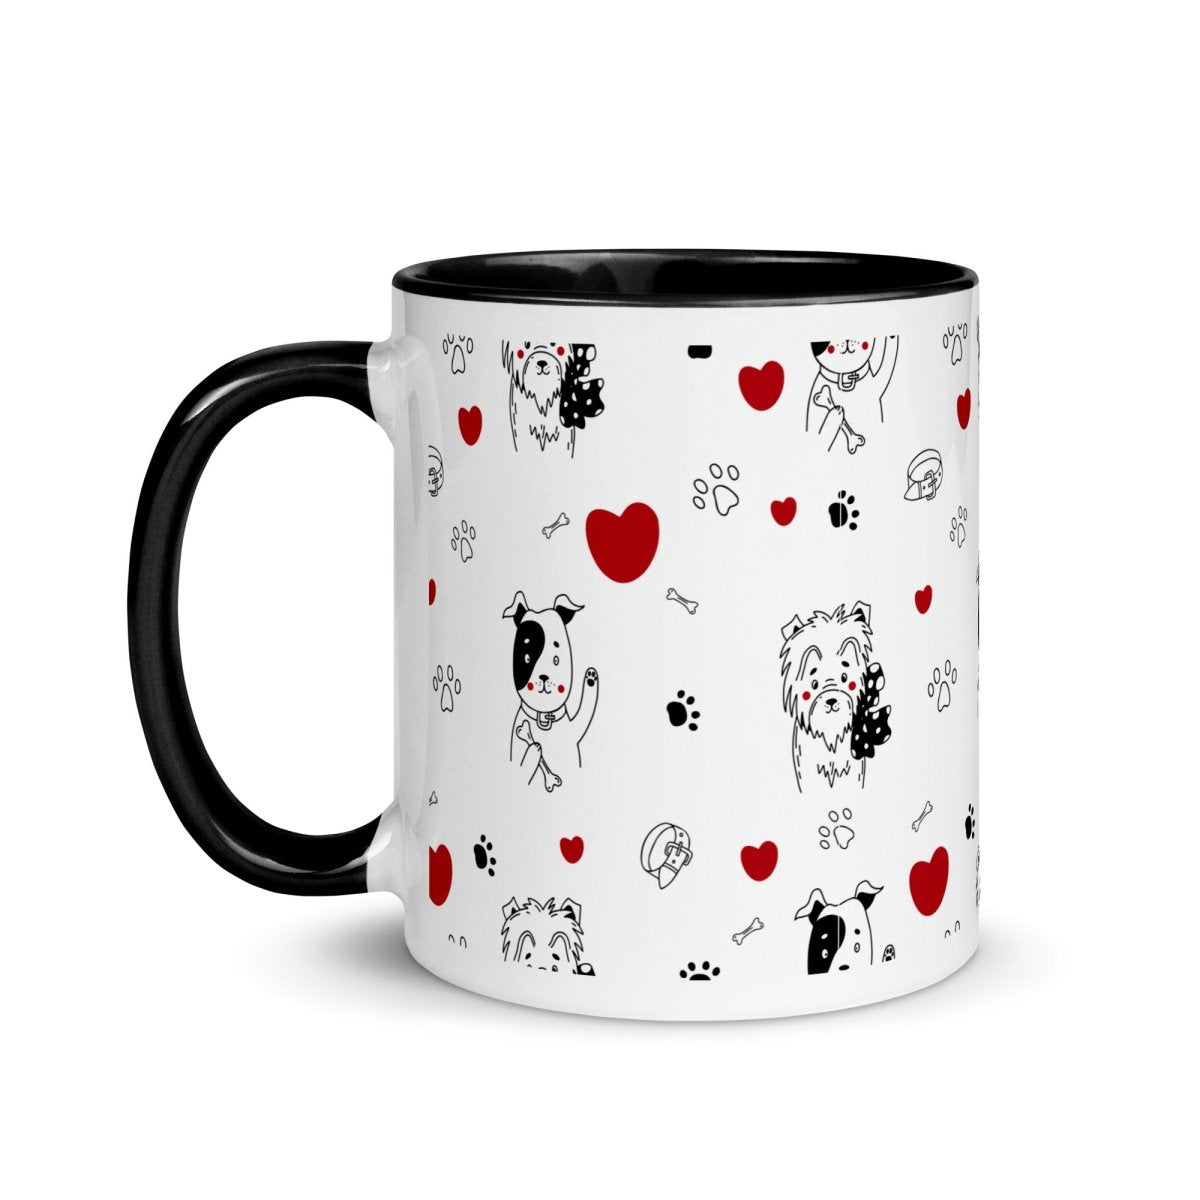 Dogs and Hearts Mug - DoggyLoveandMore